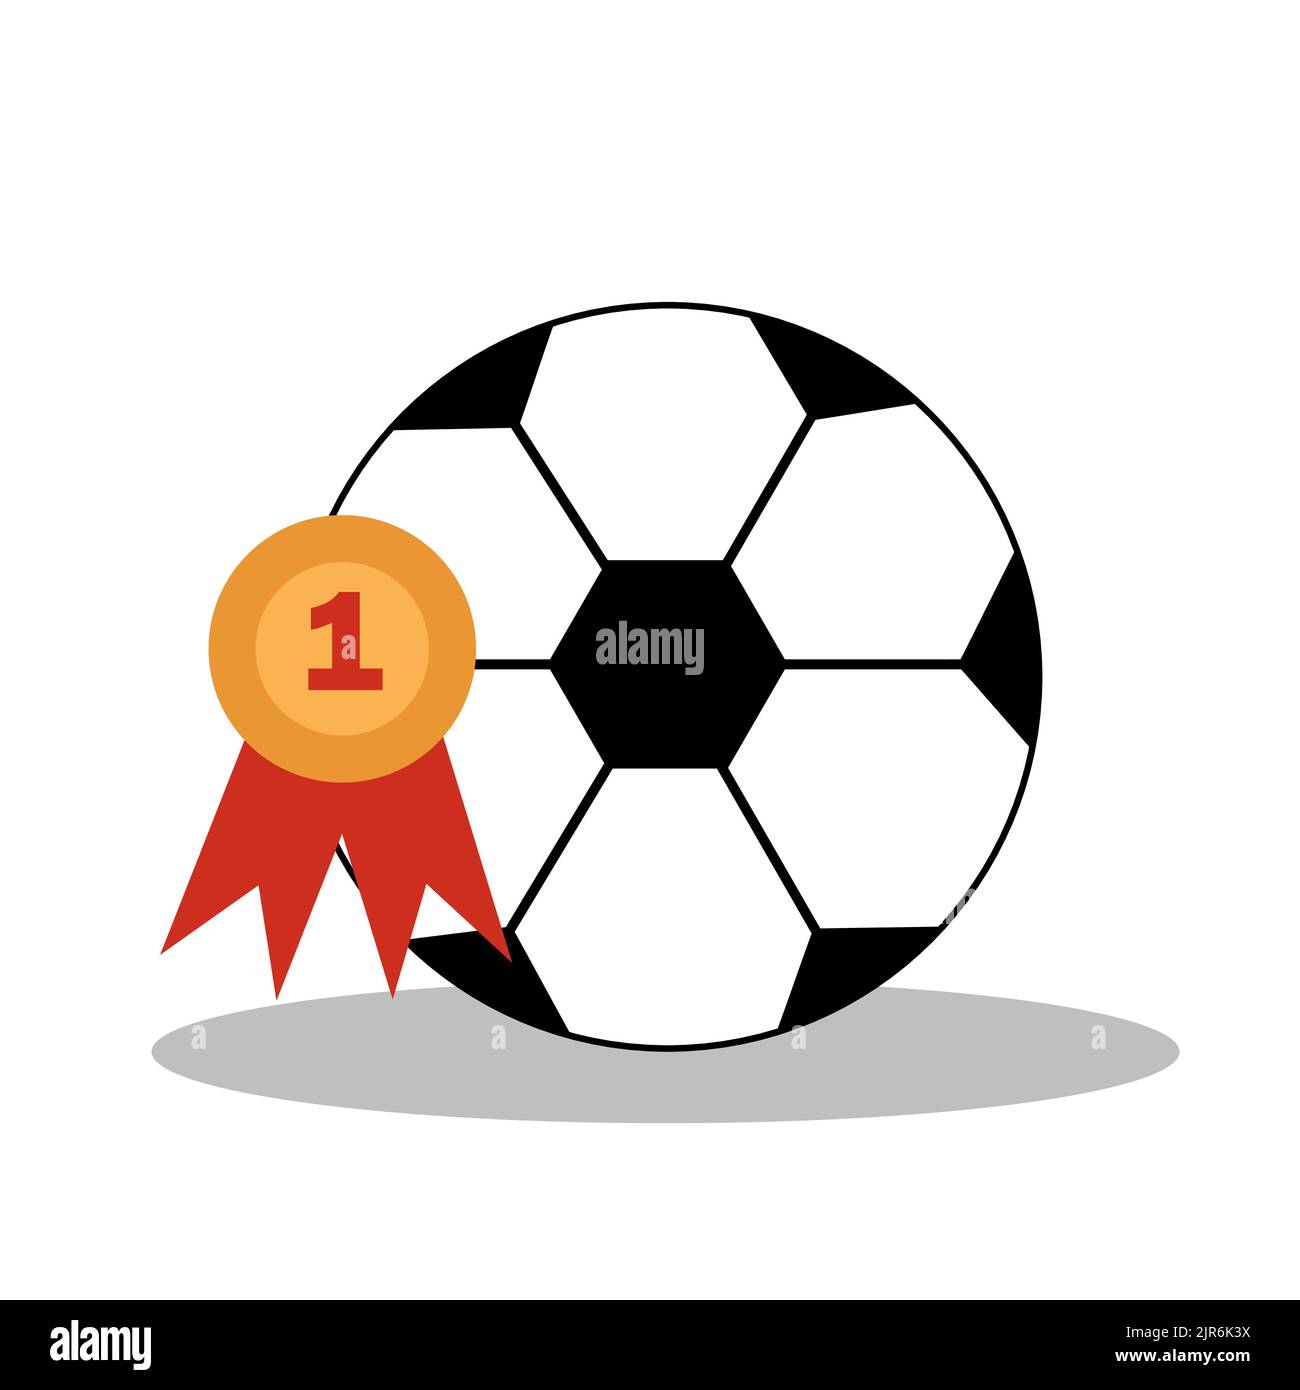 Fußball mit Meisterschaftsmedaille. Fußballspiel-Attribute für Postkarte, Logo oder Design. Flache Abbildung. Stock Vektor